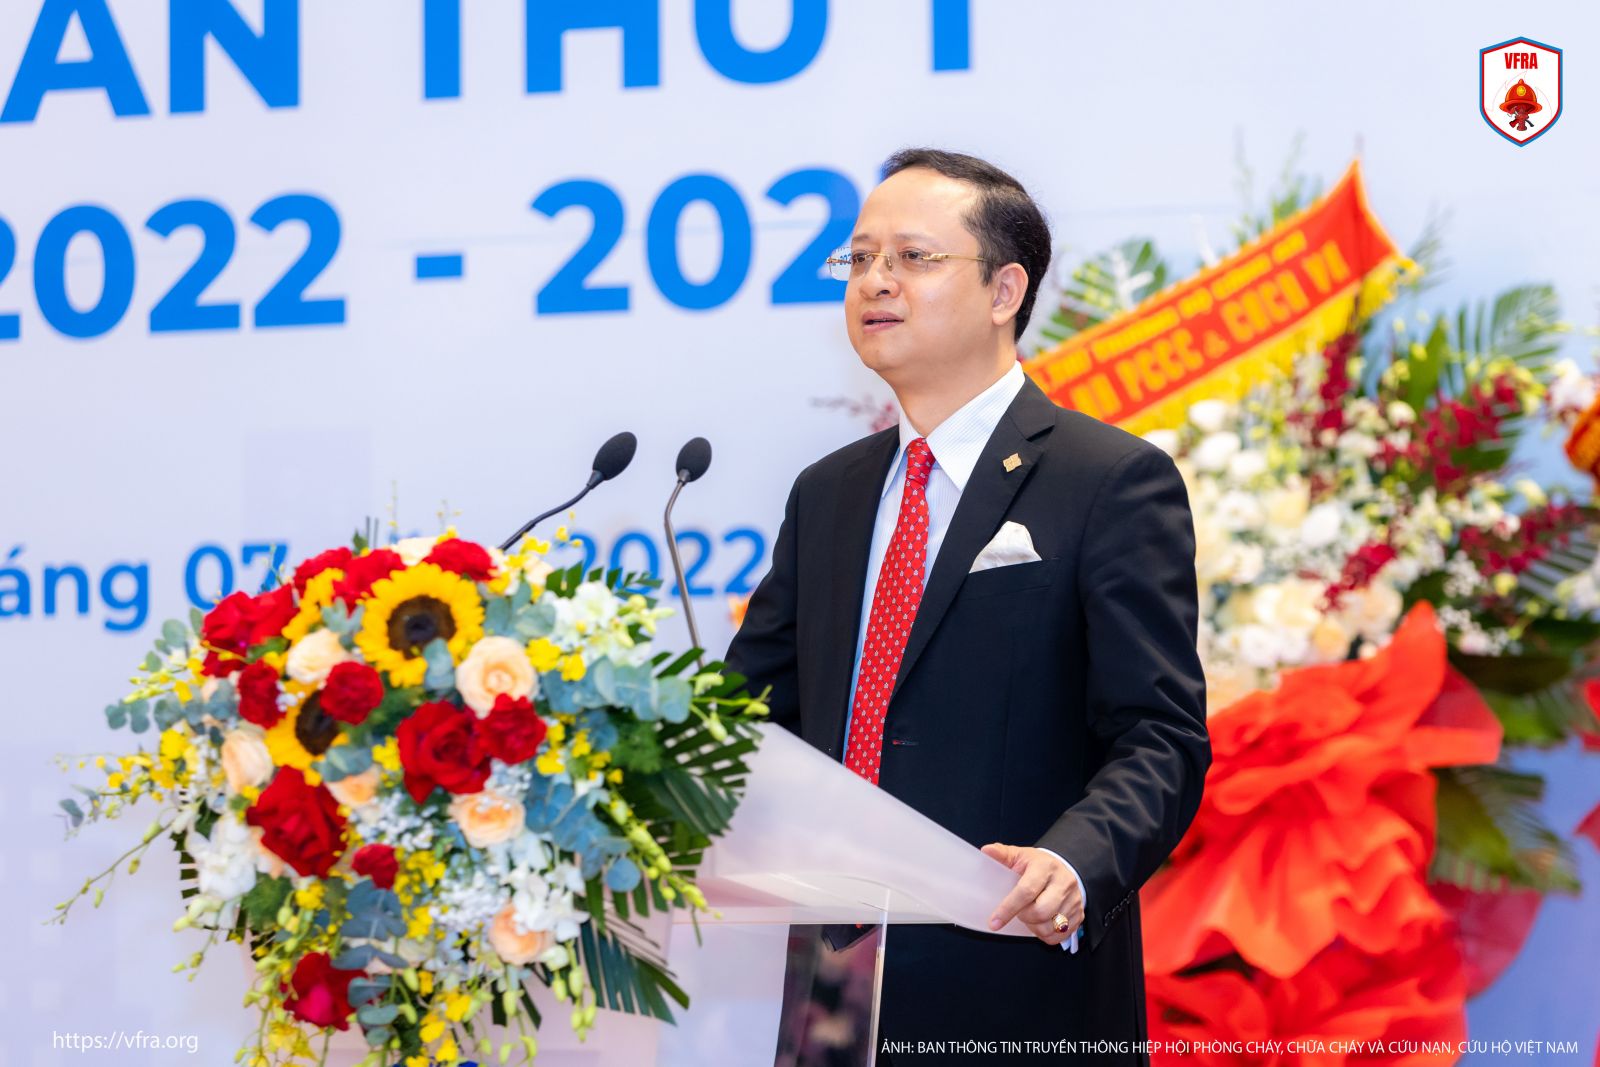 Chủ tịch NDTC. Companies được suy tôn làm Chủ tịch Hiệp hội Phòng cháy, chữa cháy và cứu nạn, cứu hộ Việt Nam khóa I (2022-2027)